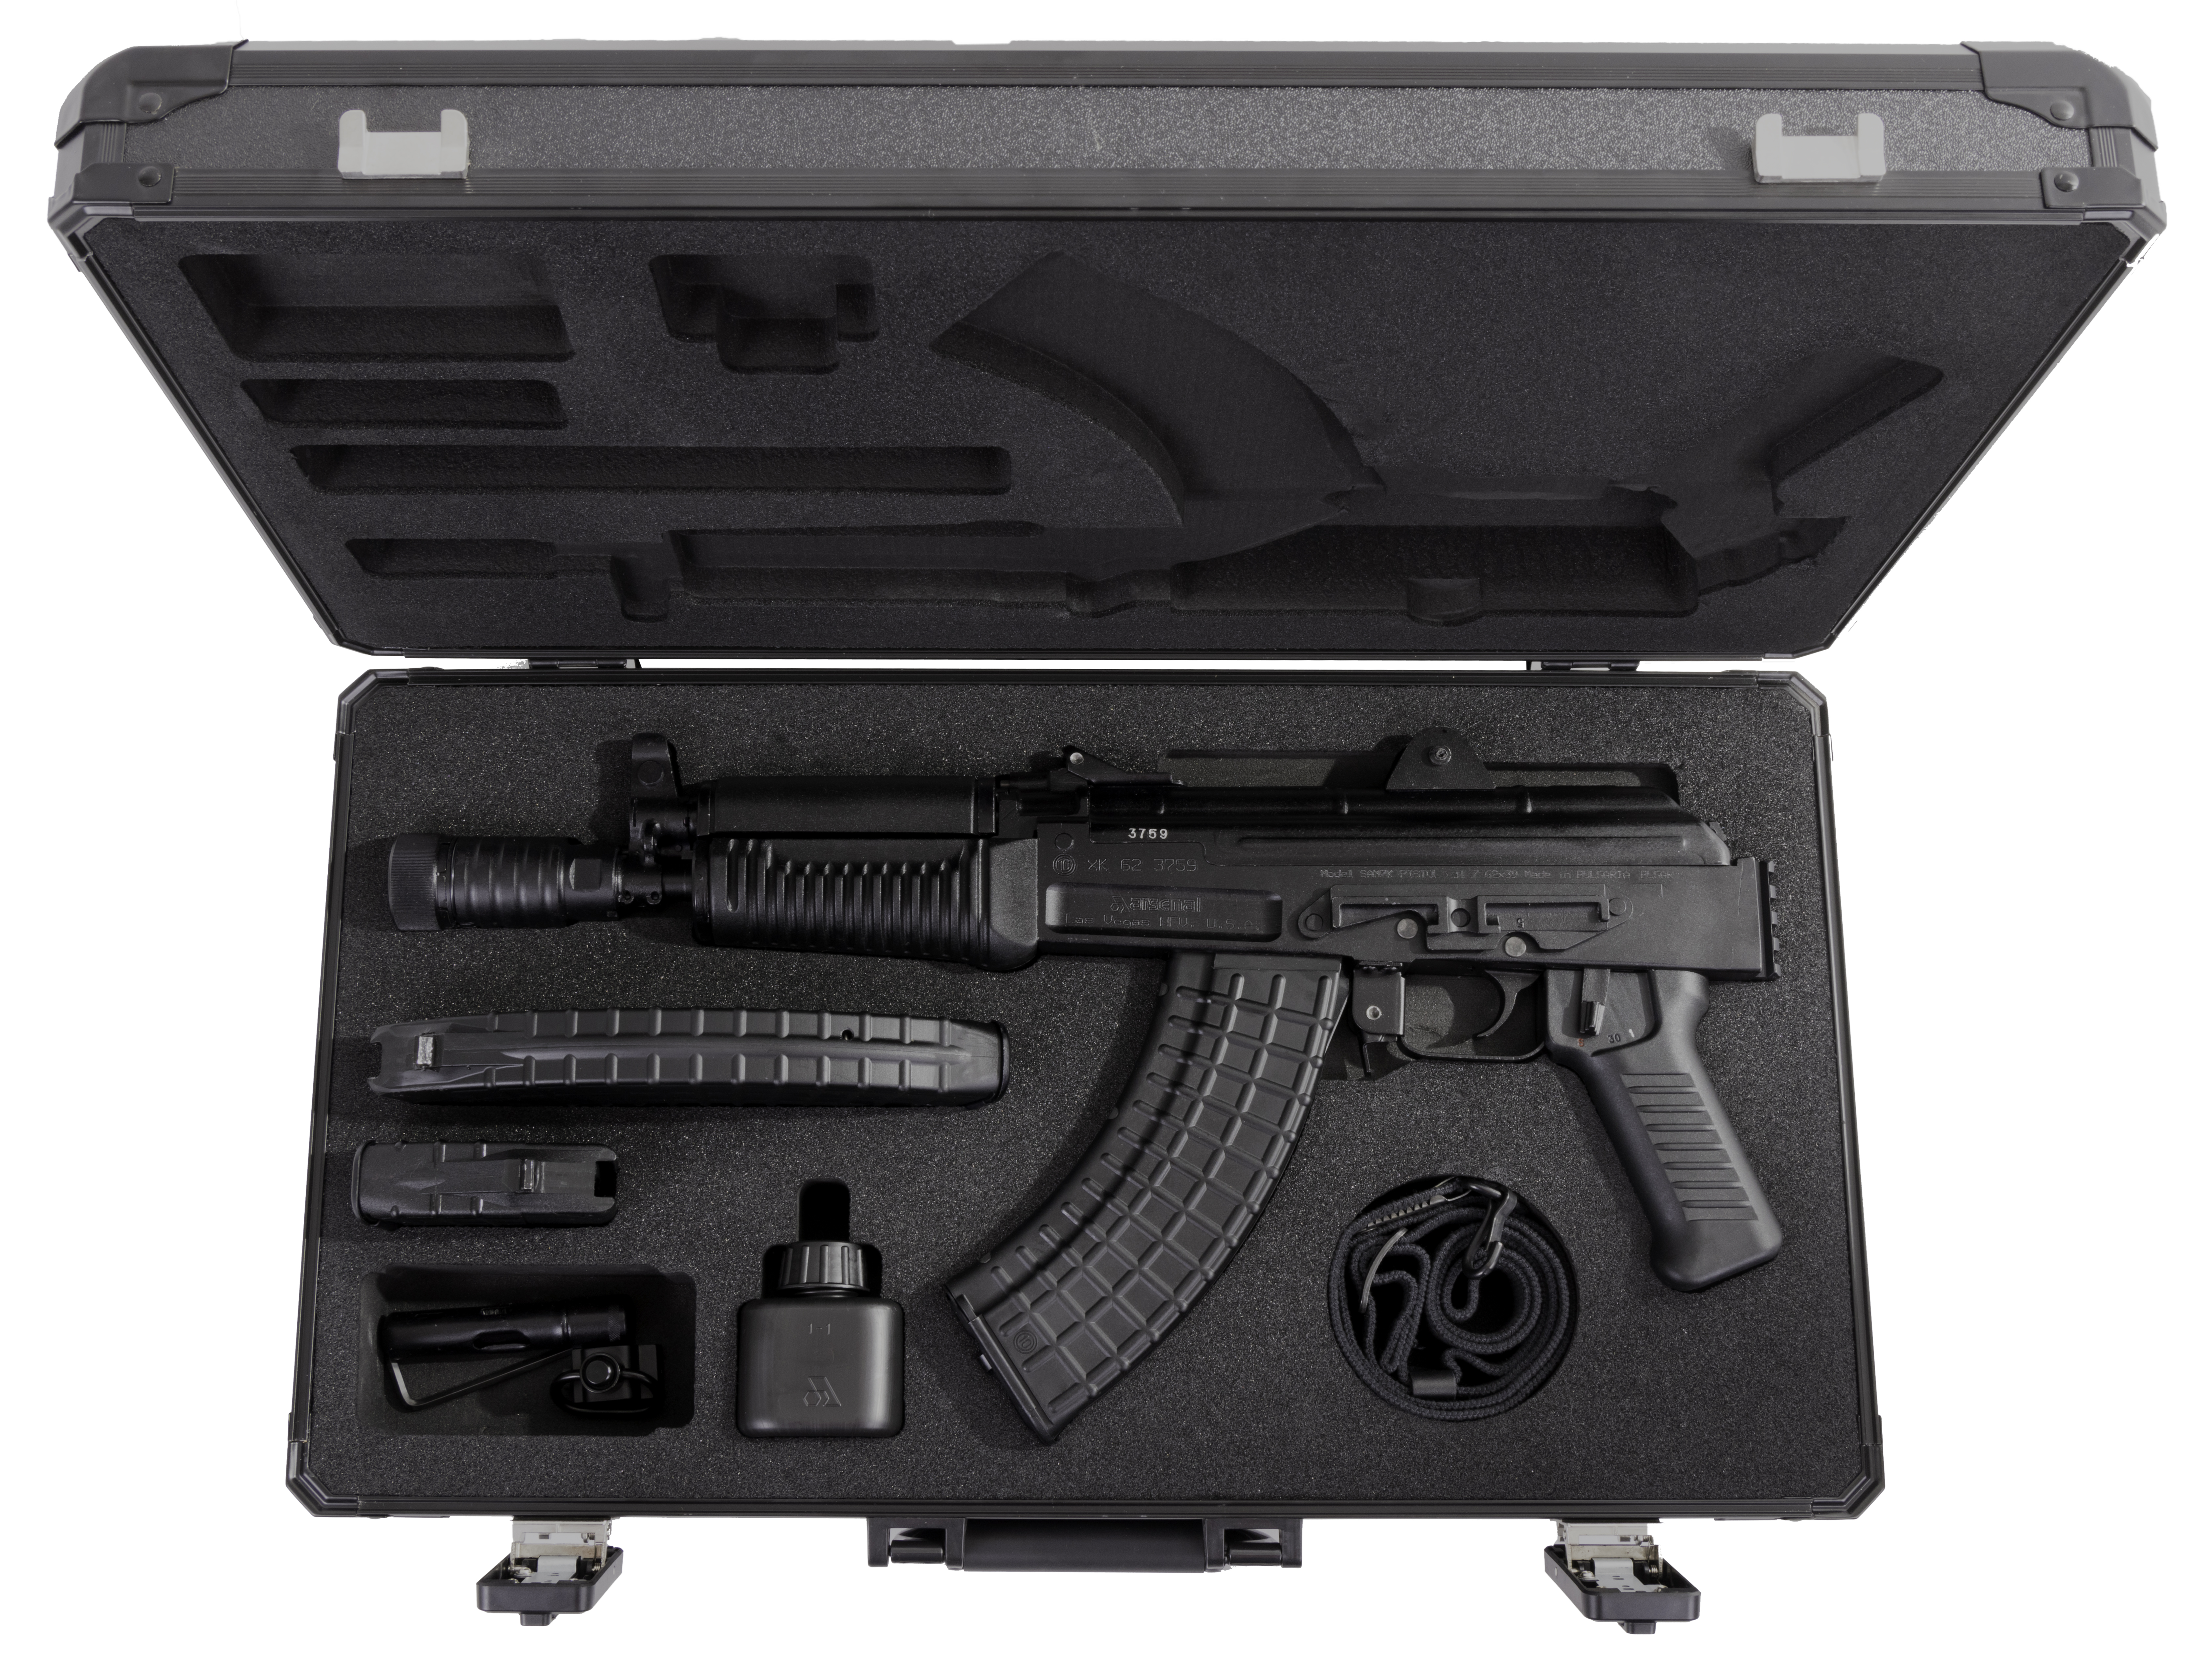 ARS SAM7K 7.62X39 PISTOL 1 10RD 1 30RD CASE - Pistols